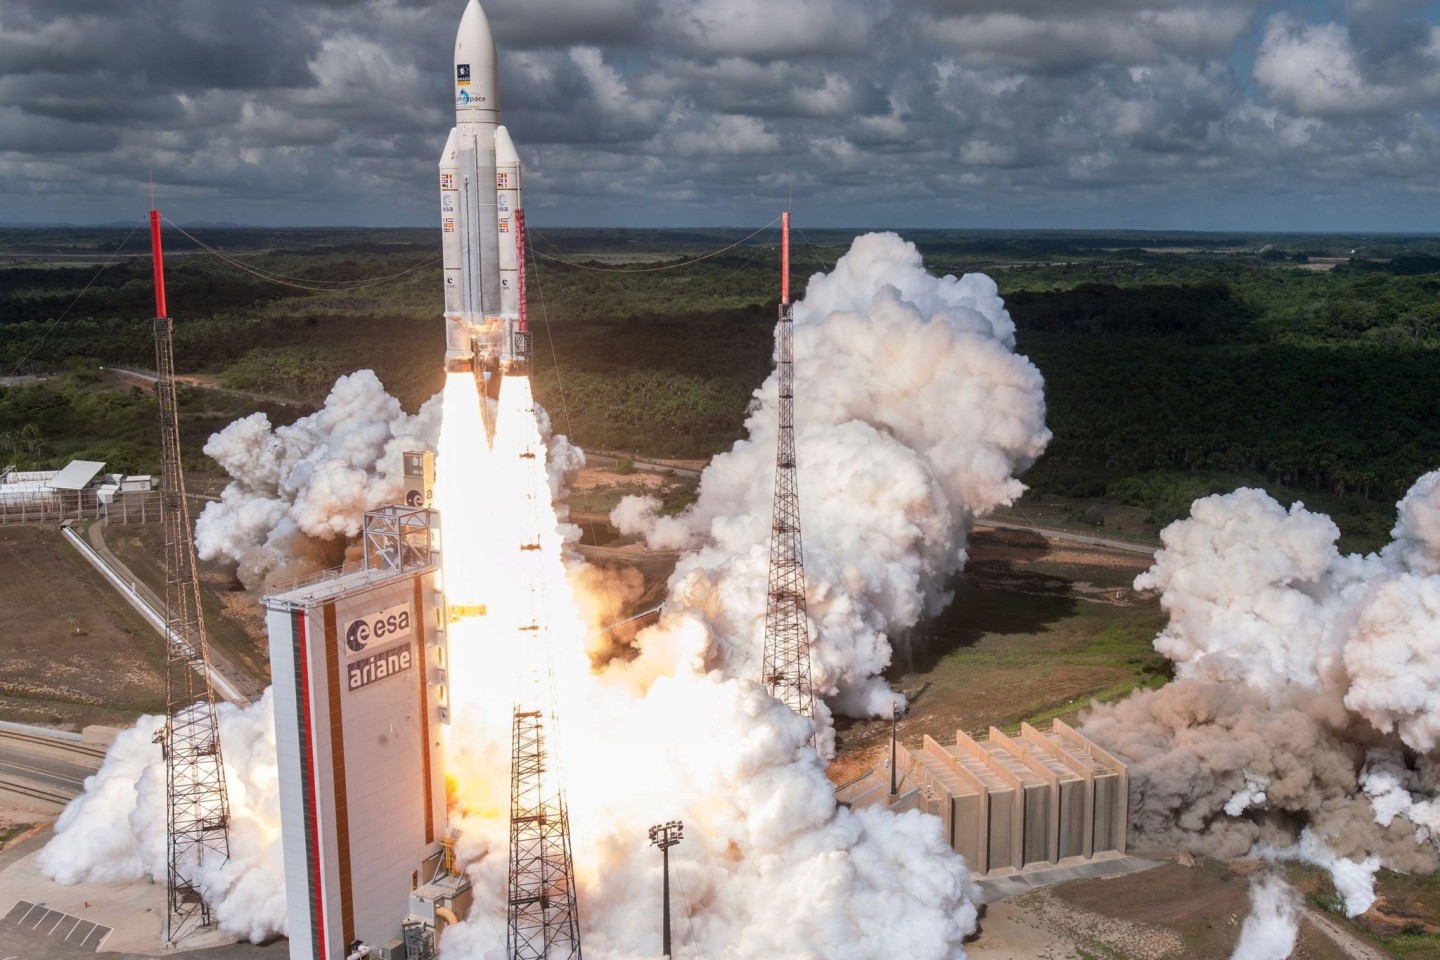 Ein Wissenschaftler soll Informationen über die Ariane-Raketen an den russischen Geheimdienst weitergegeben haben.